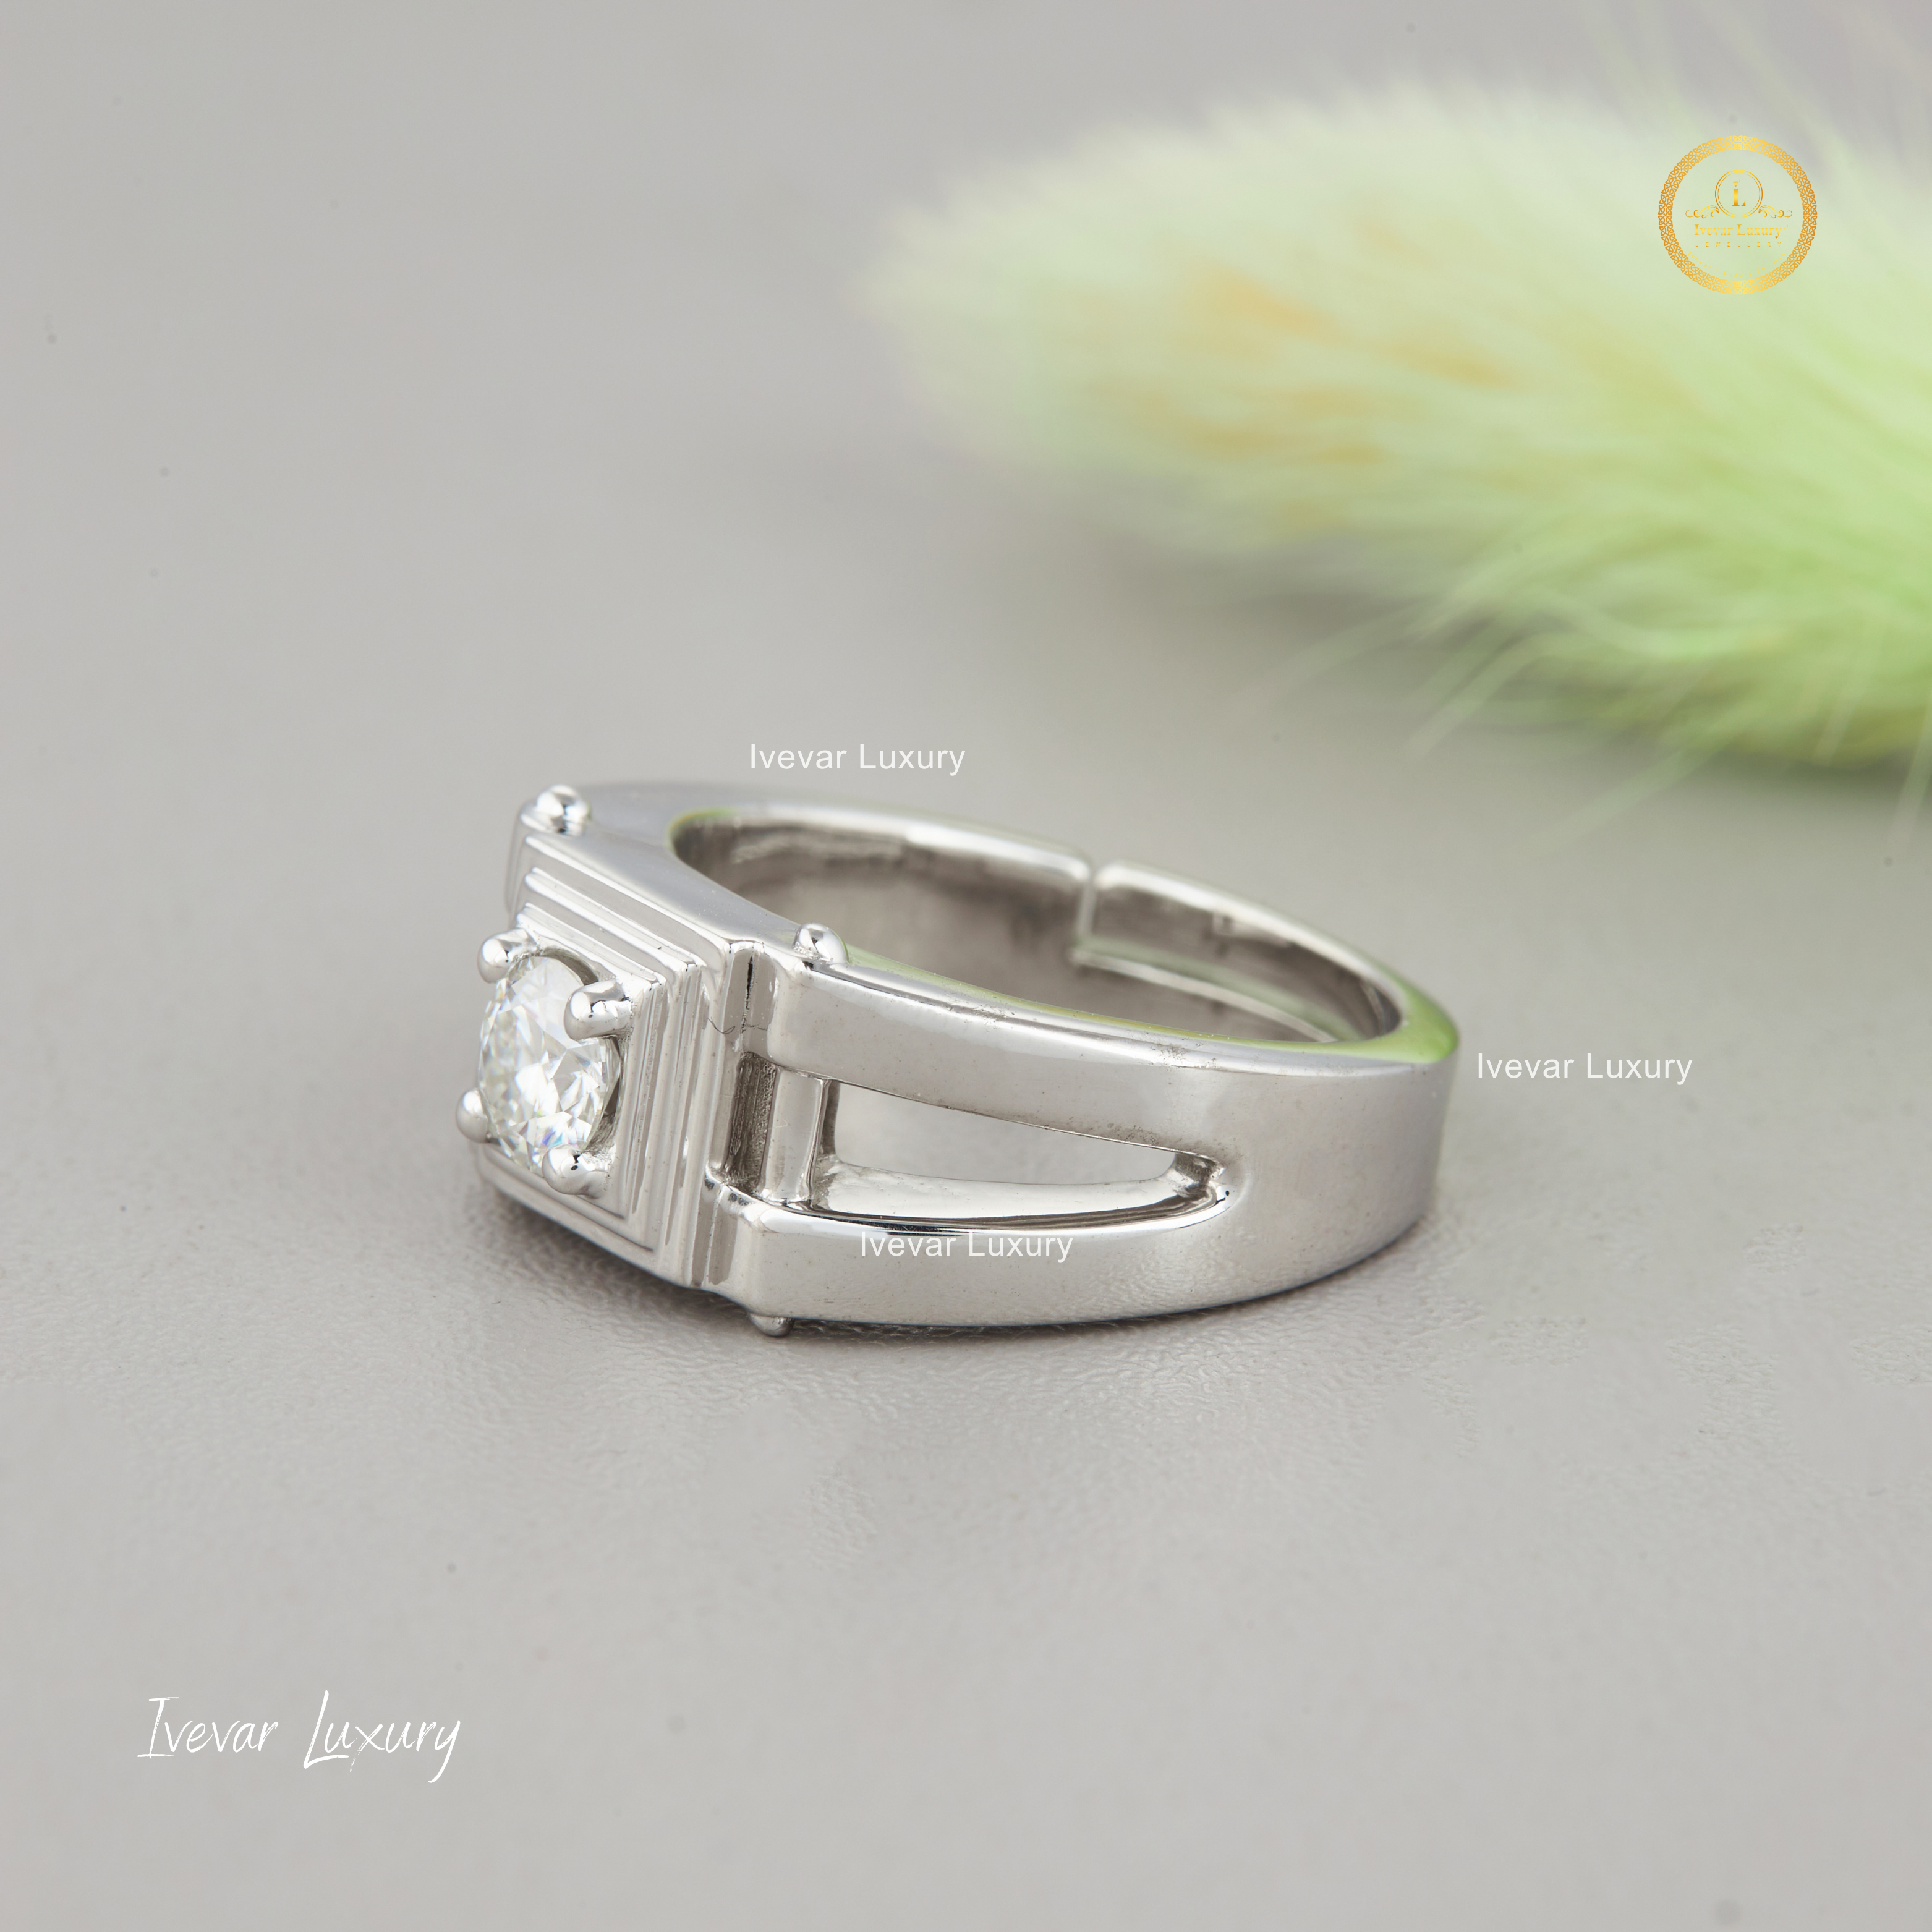 Ivevar 925 Pure Silver Unique Solitaire Ring For Men